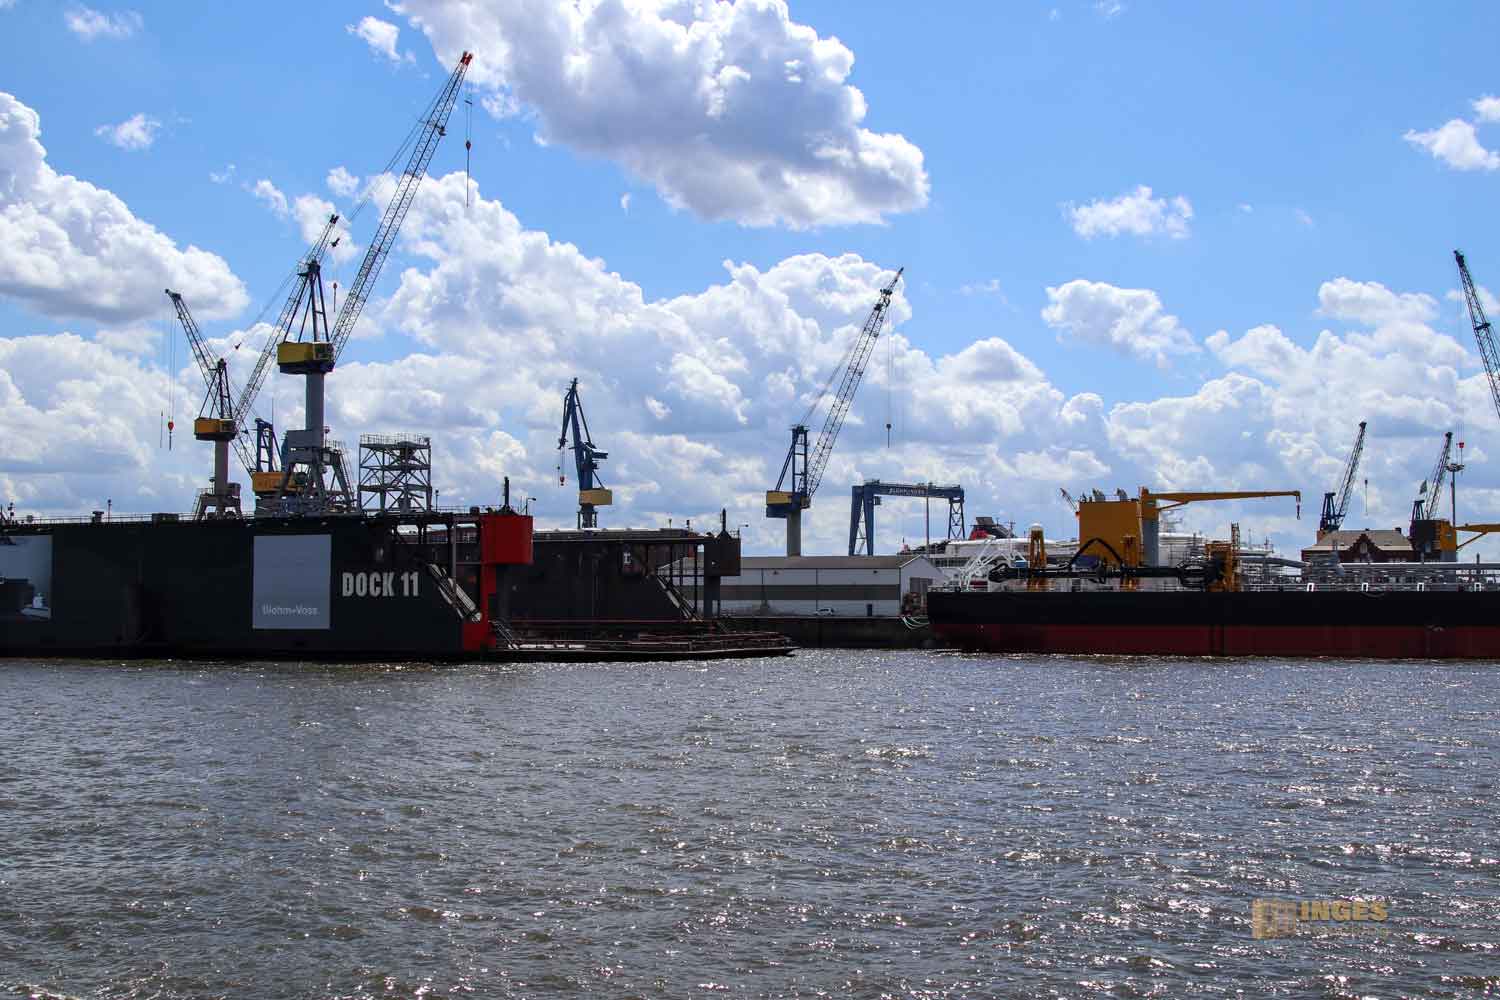 Werft Blohm und Voss Hamburger Hafen 9802